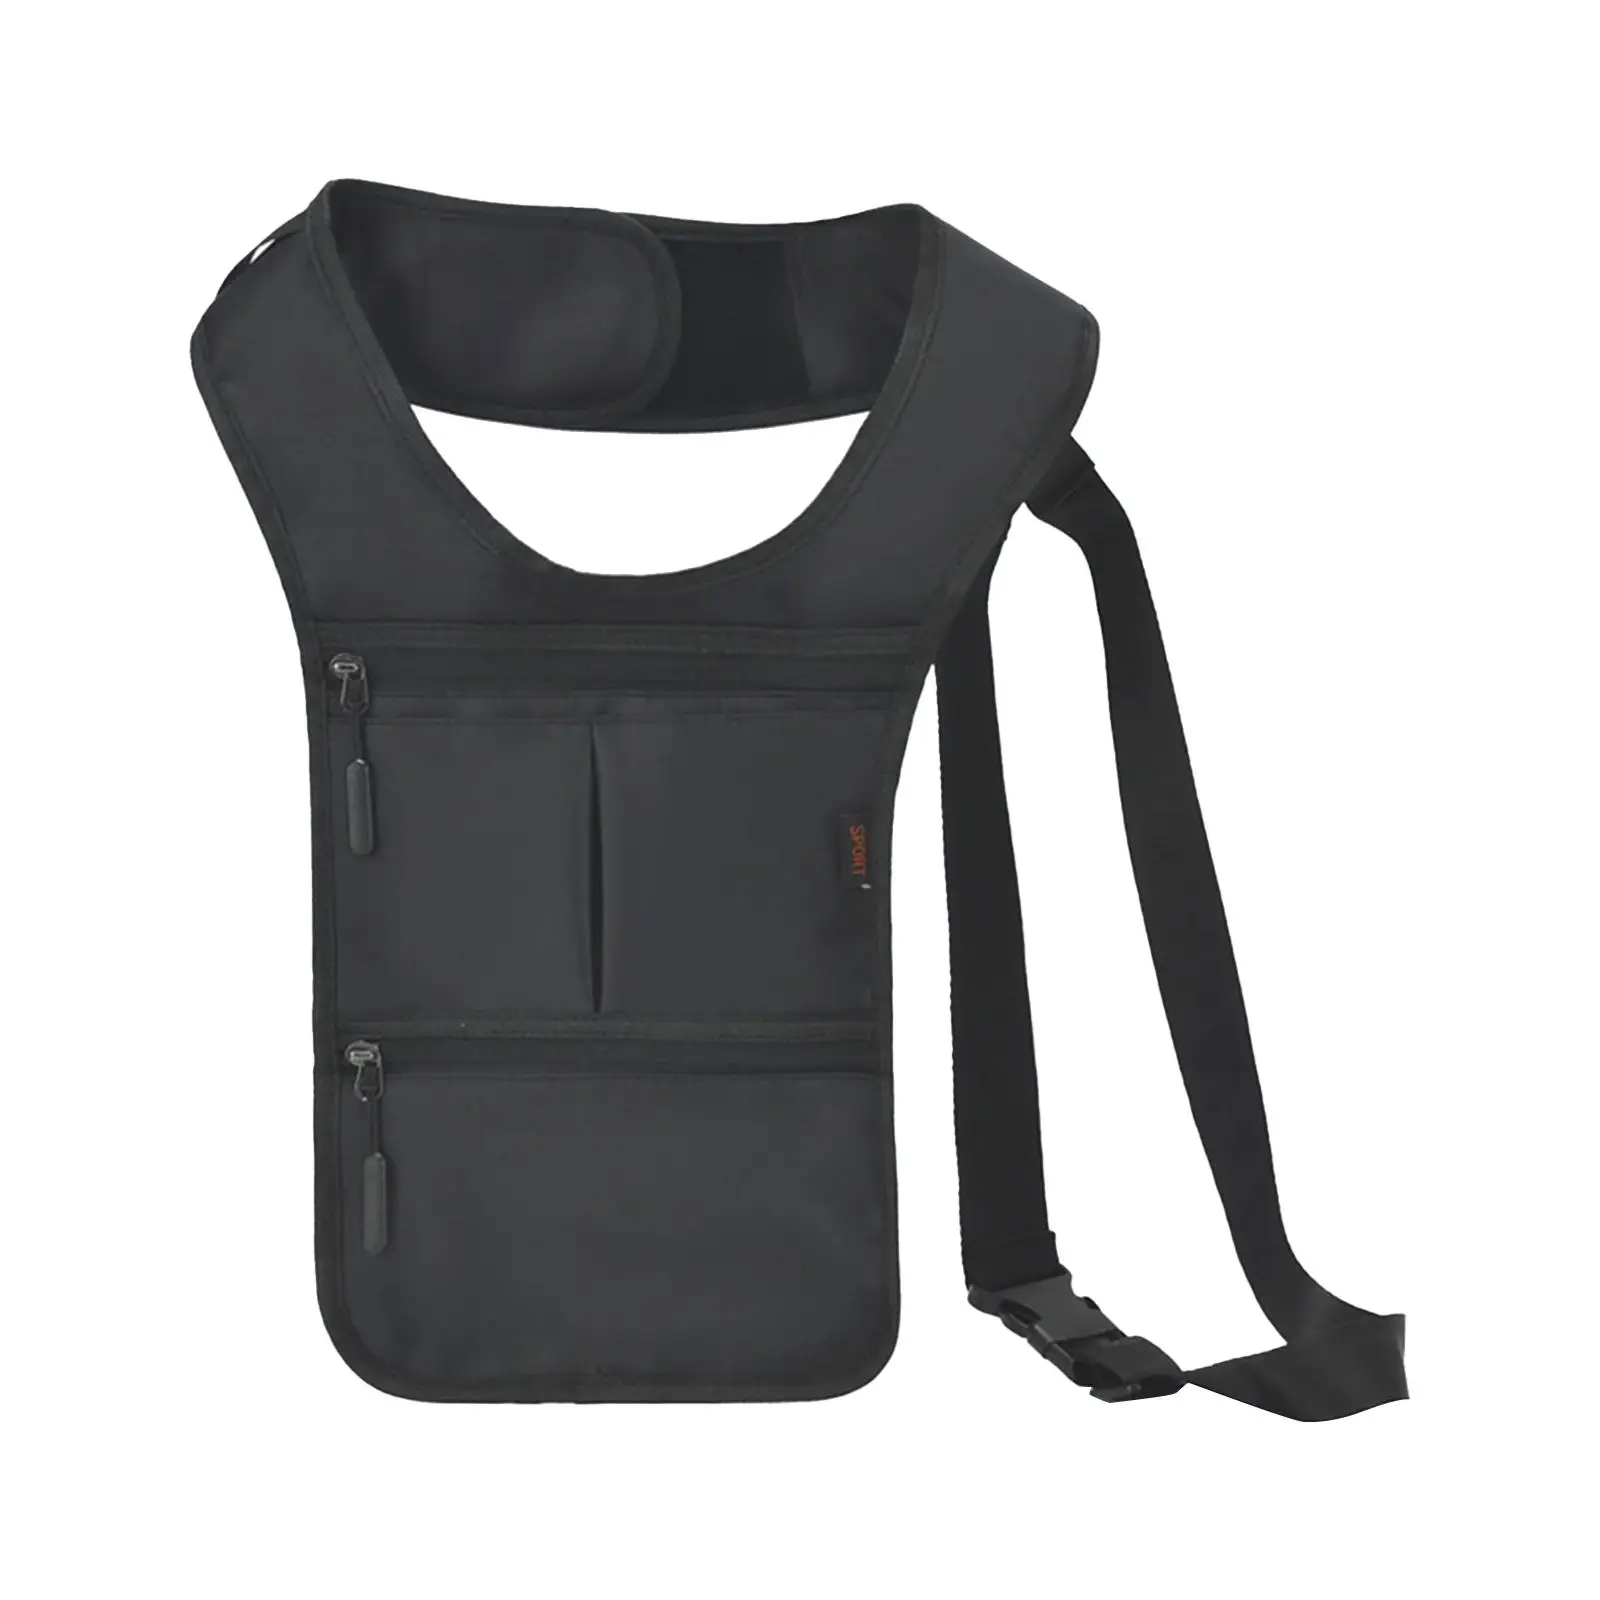 Hidden Underarm Shoulder Bag Adjustable Multi Pockets Black Casual Daypack Bag Comfortable Pouch Concealed Pack for Outdoor Work